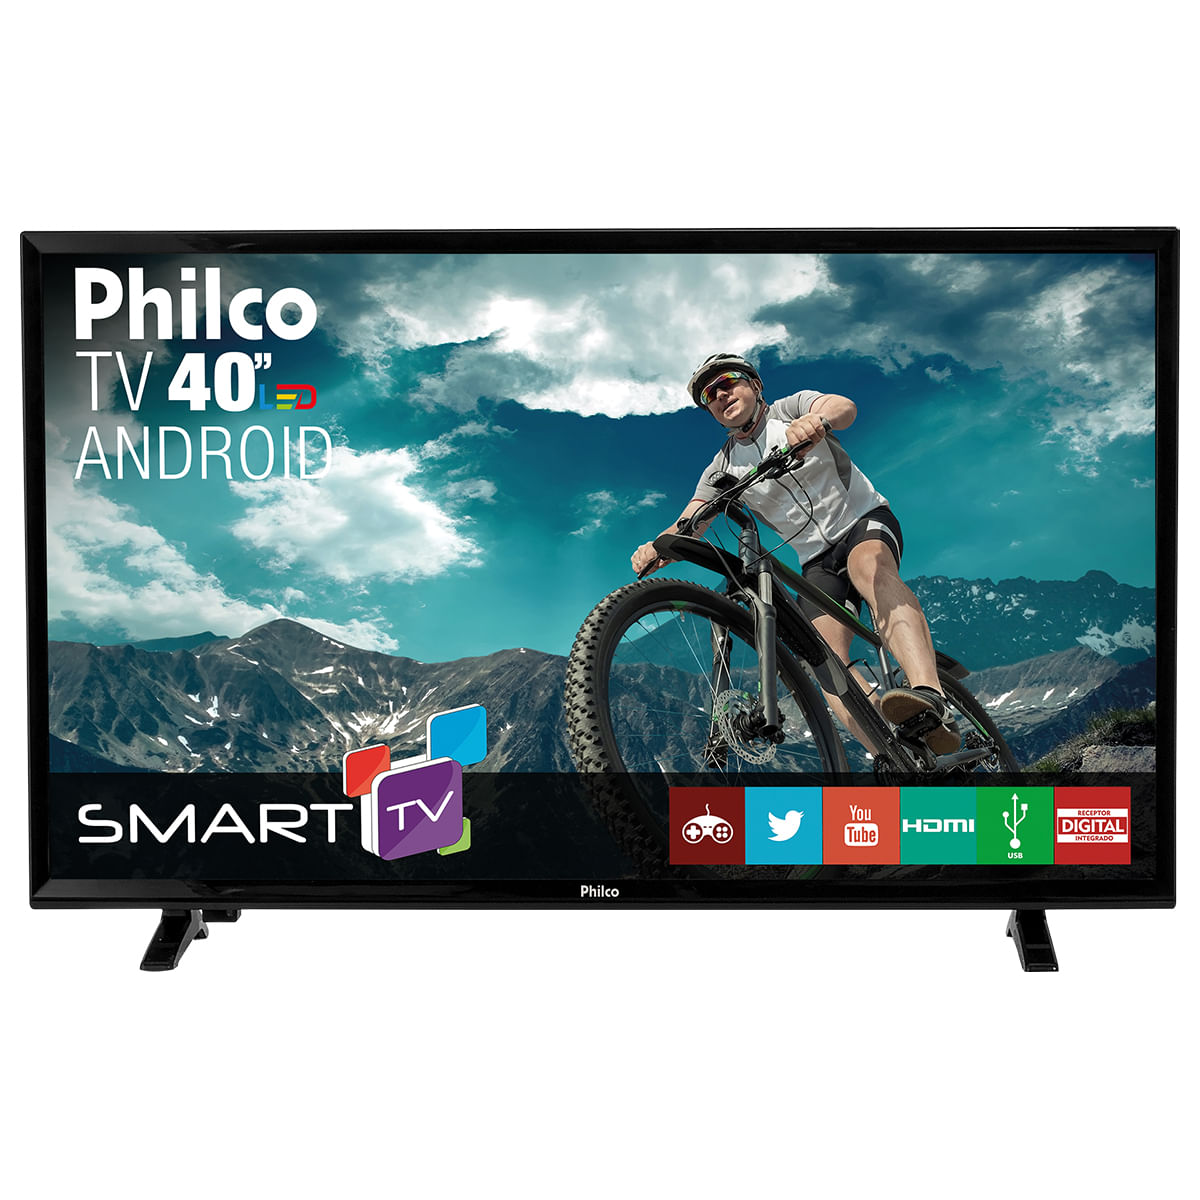 Smart TV Philco 42 Full HD LED